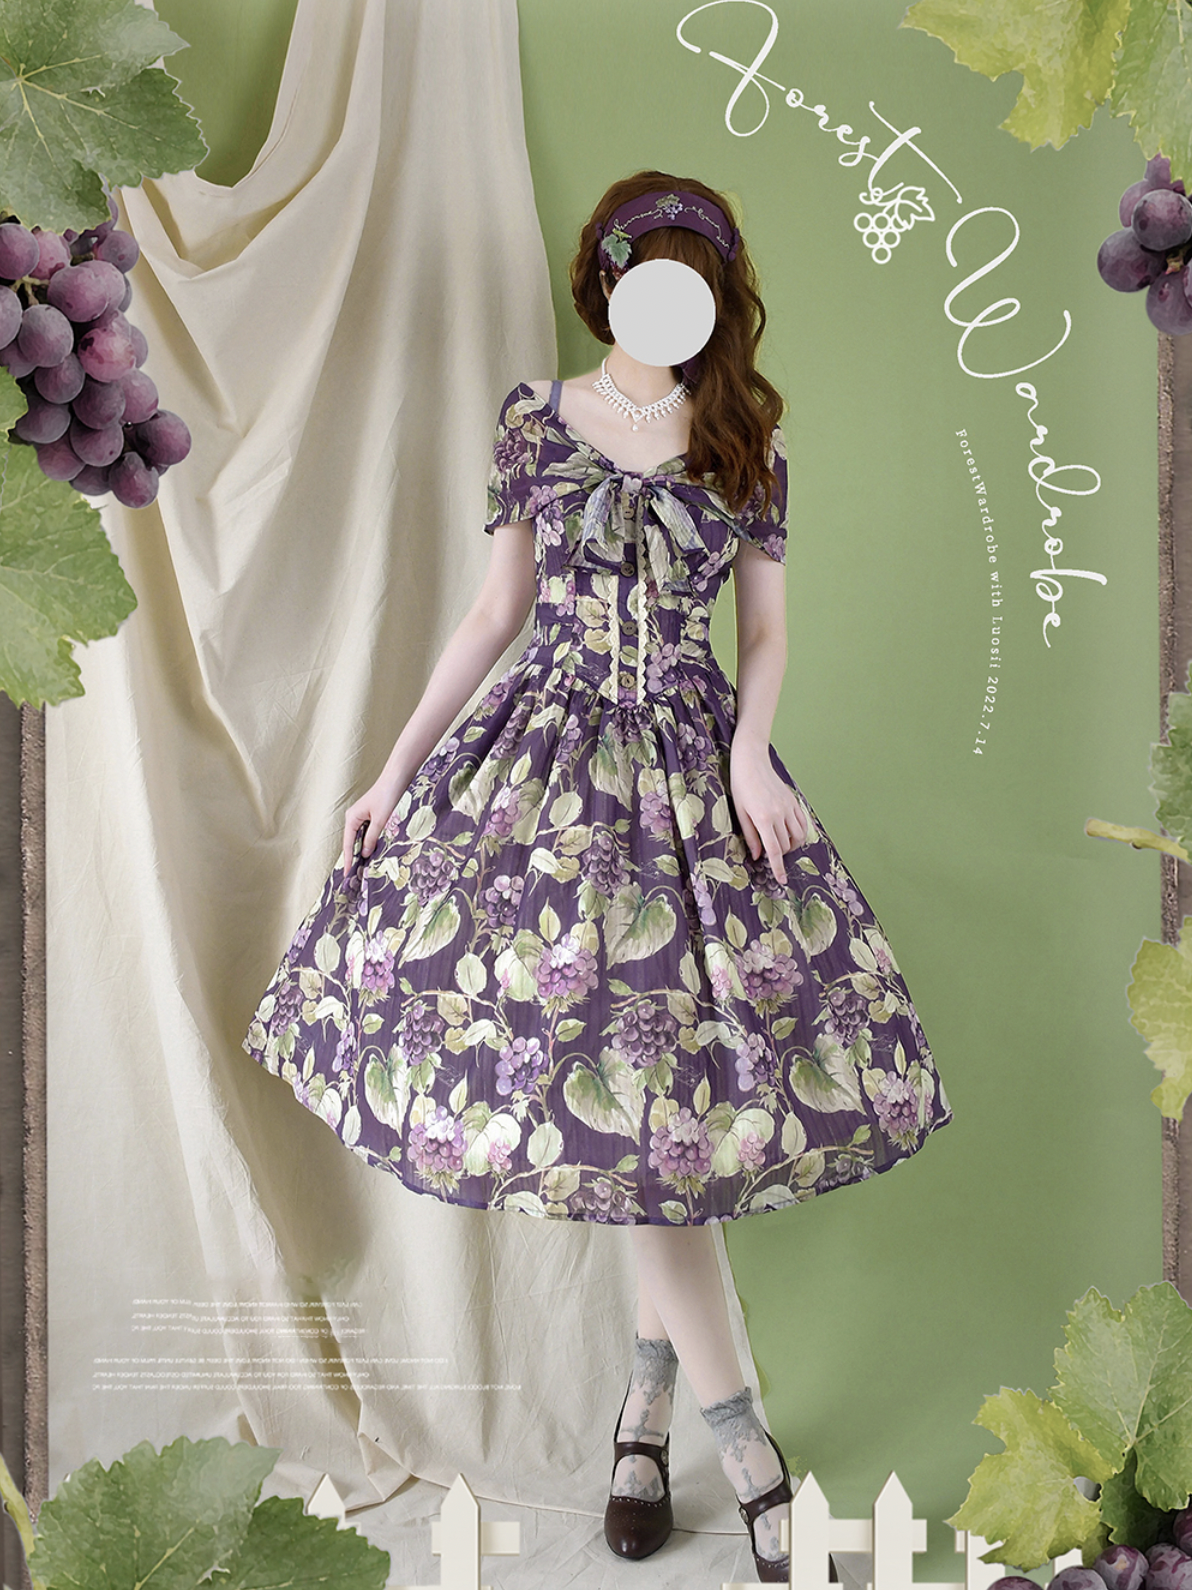 Grape Wardrobe www.krzysztofbialy.com